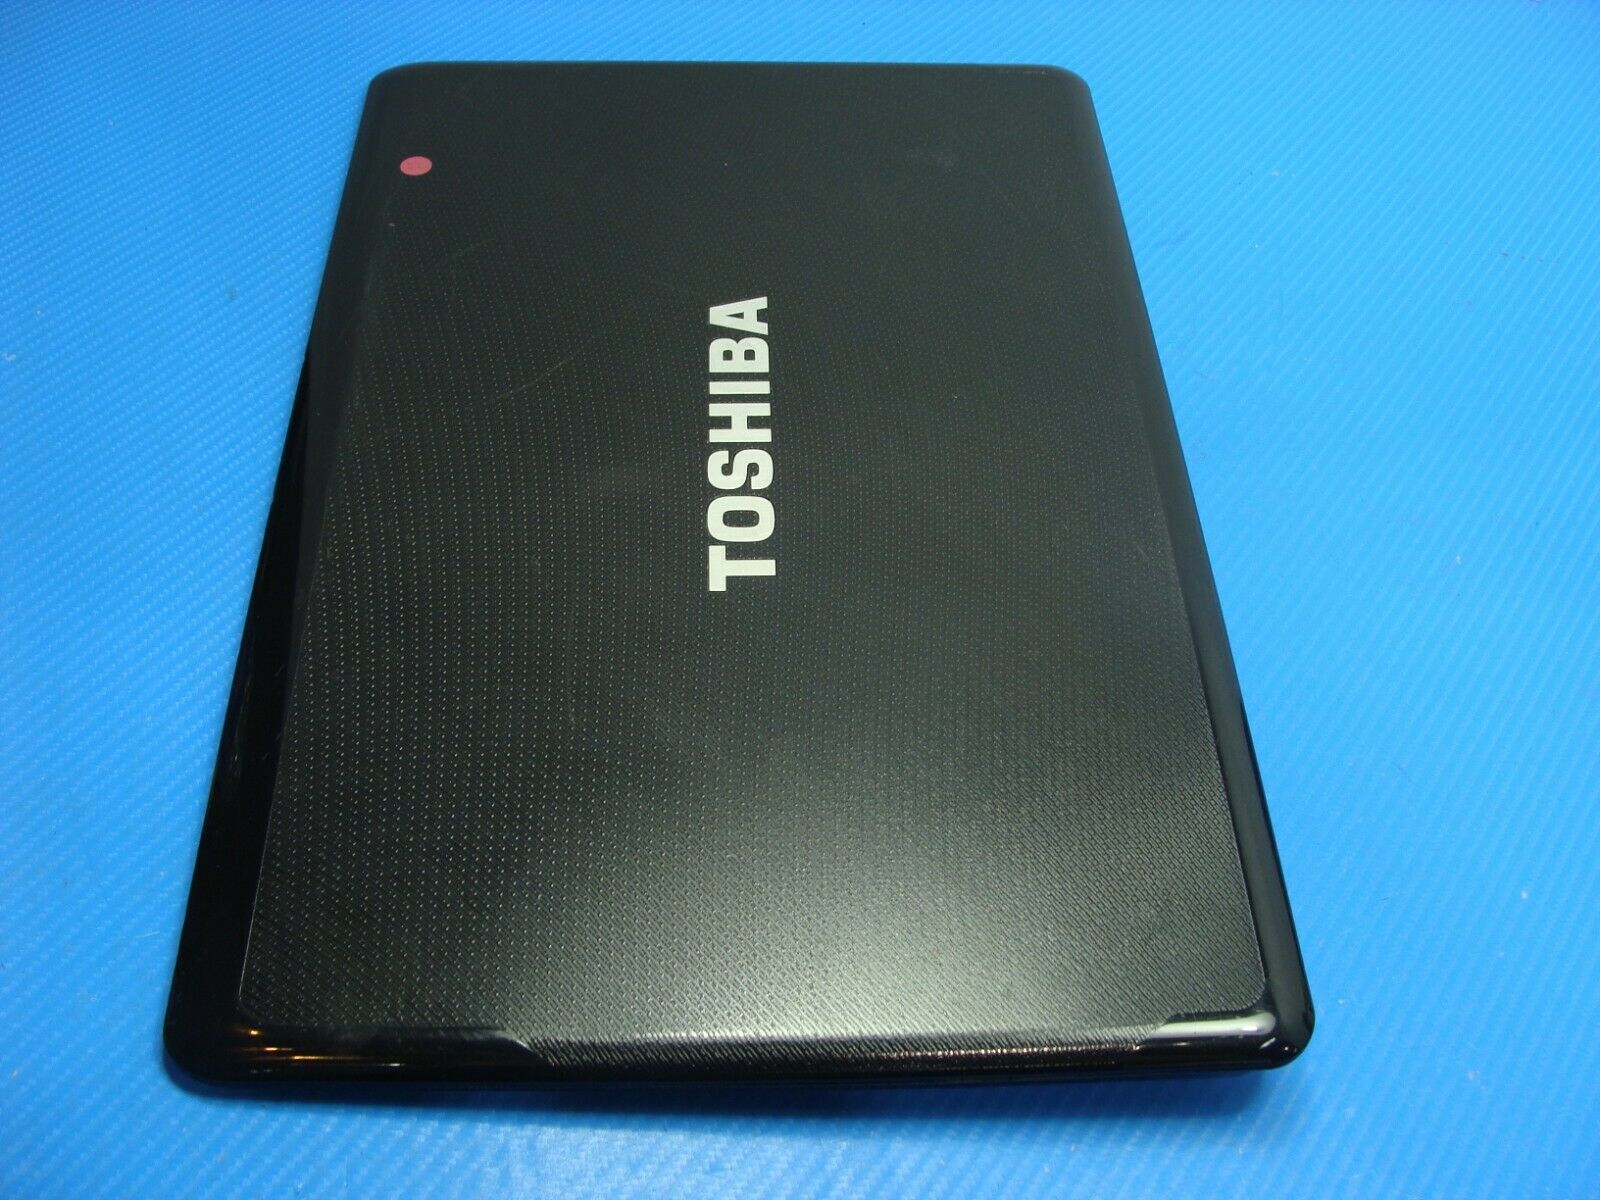 Toshiba Satellite A665D-S6051 16